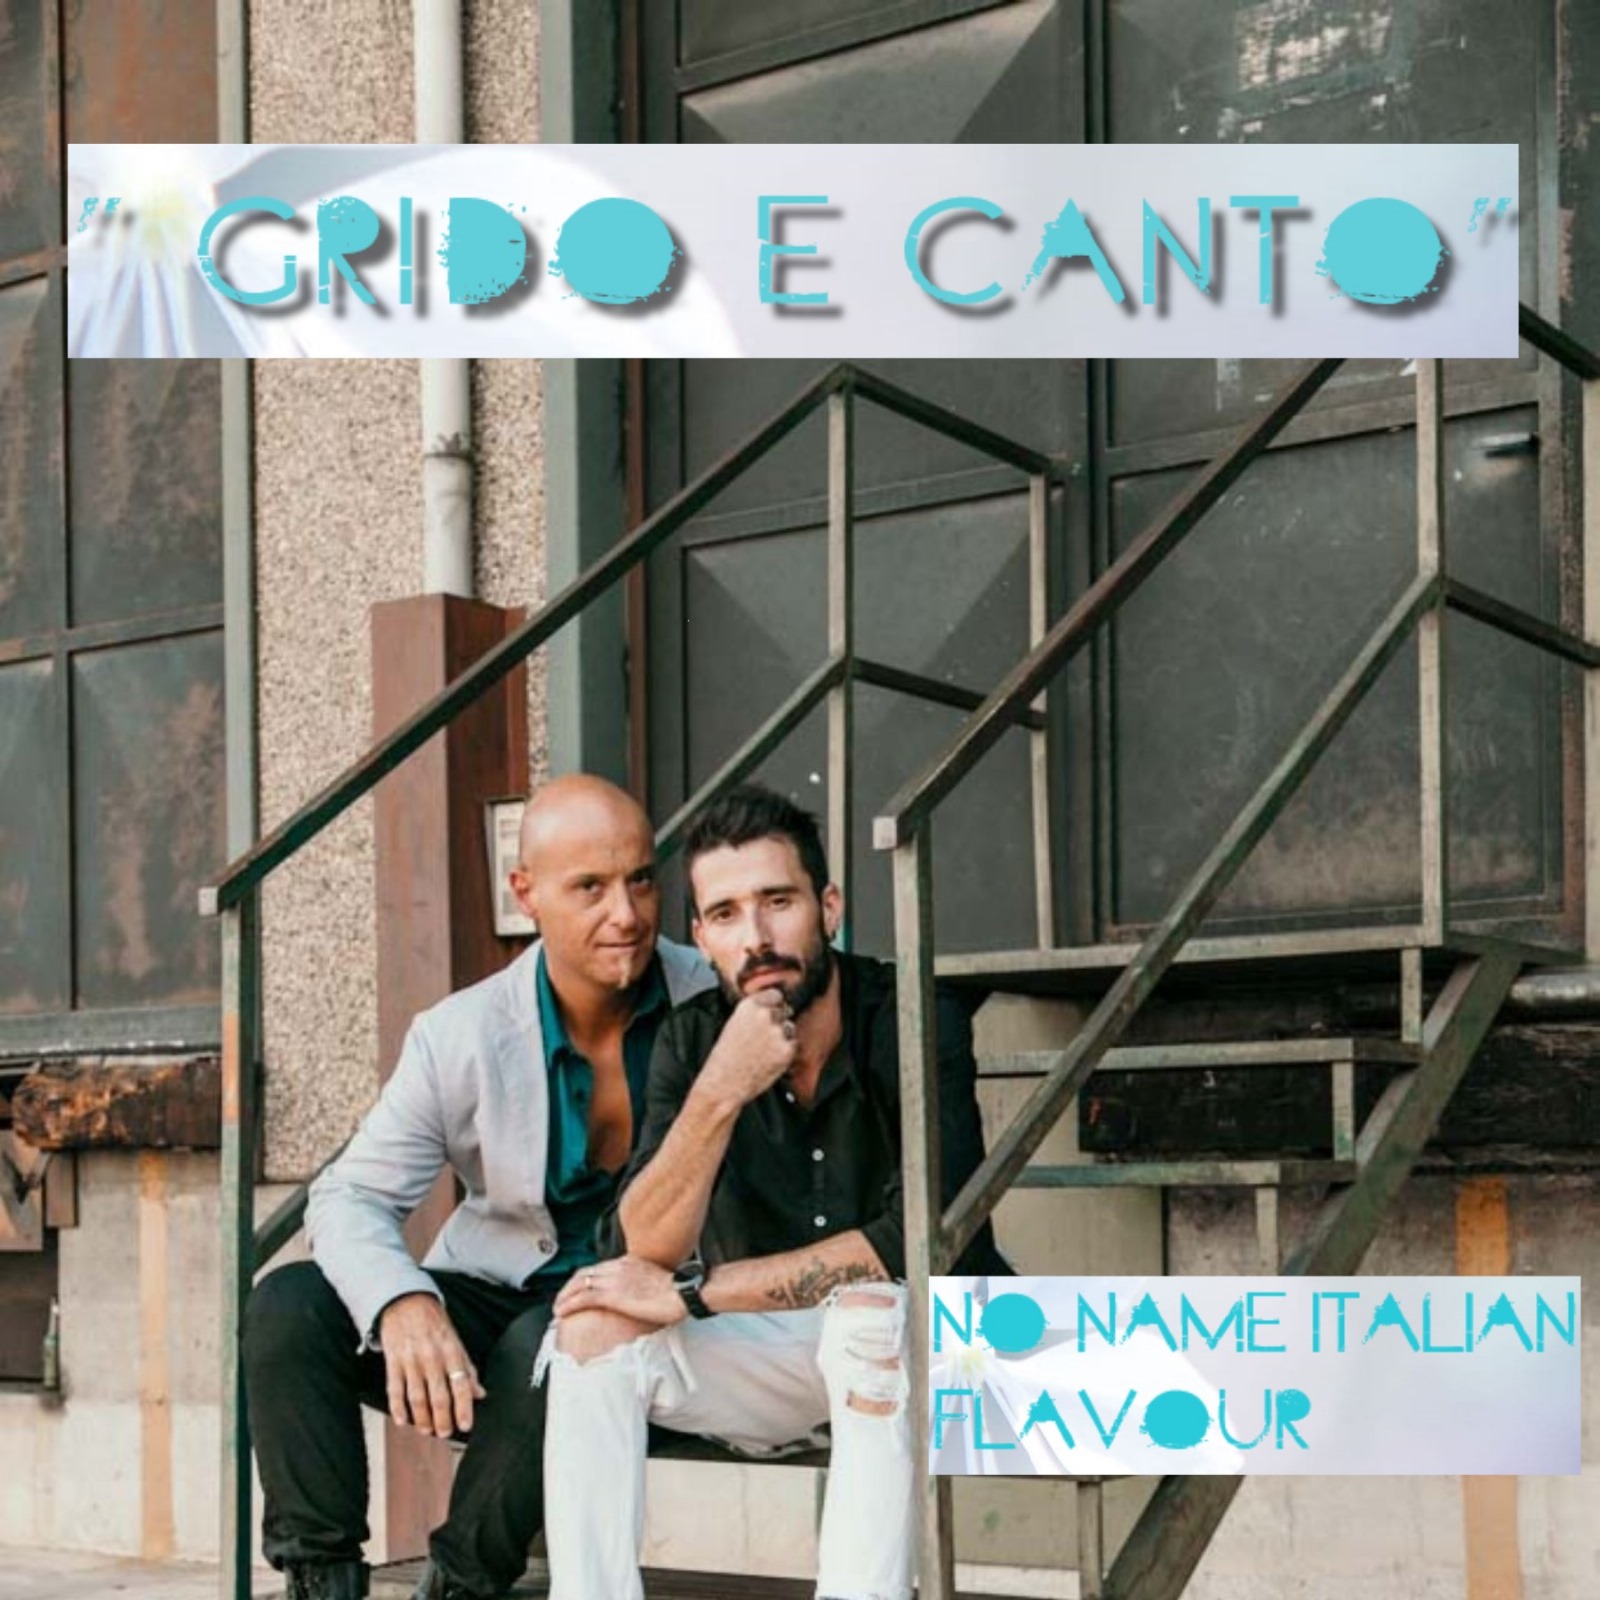 Al momento stai visualizzando “Grido e canto”: il nuovo singolo dei No Name Italian Flavour